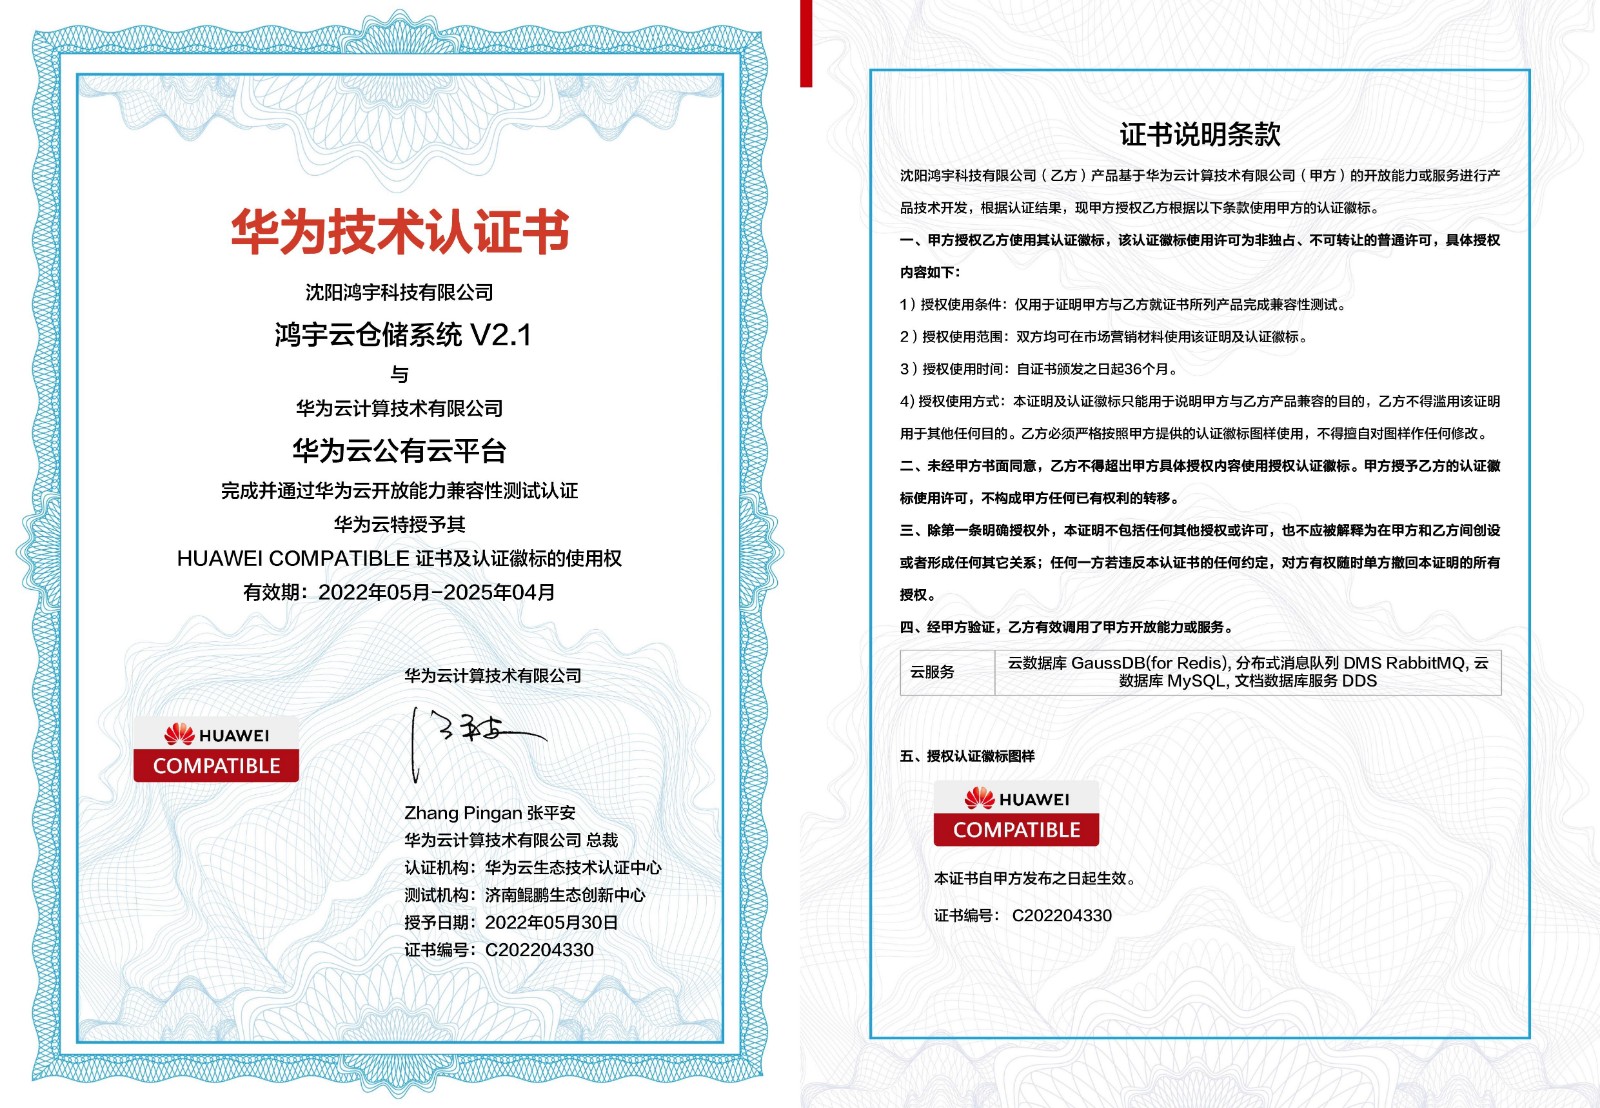 鸿宇云仓储系统V2.1 获华为COMPATIBLE技术认证